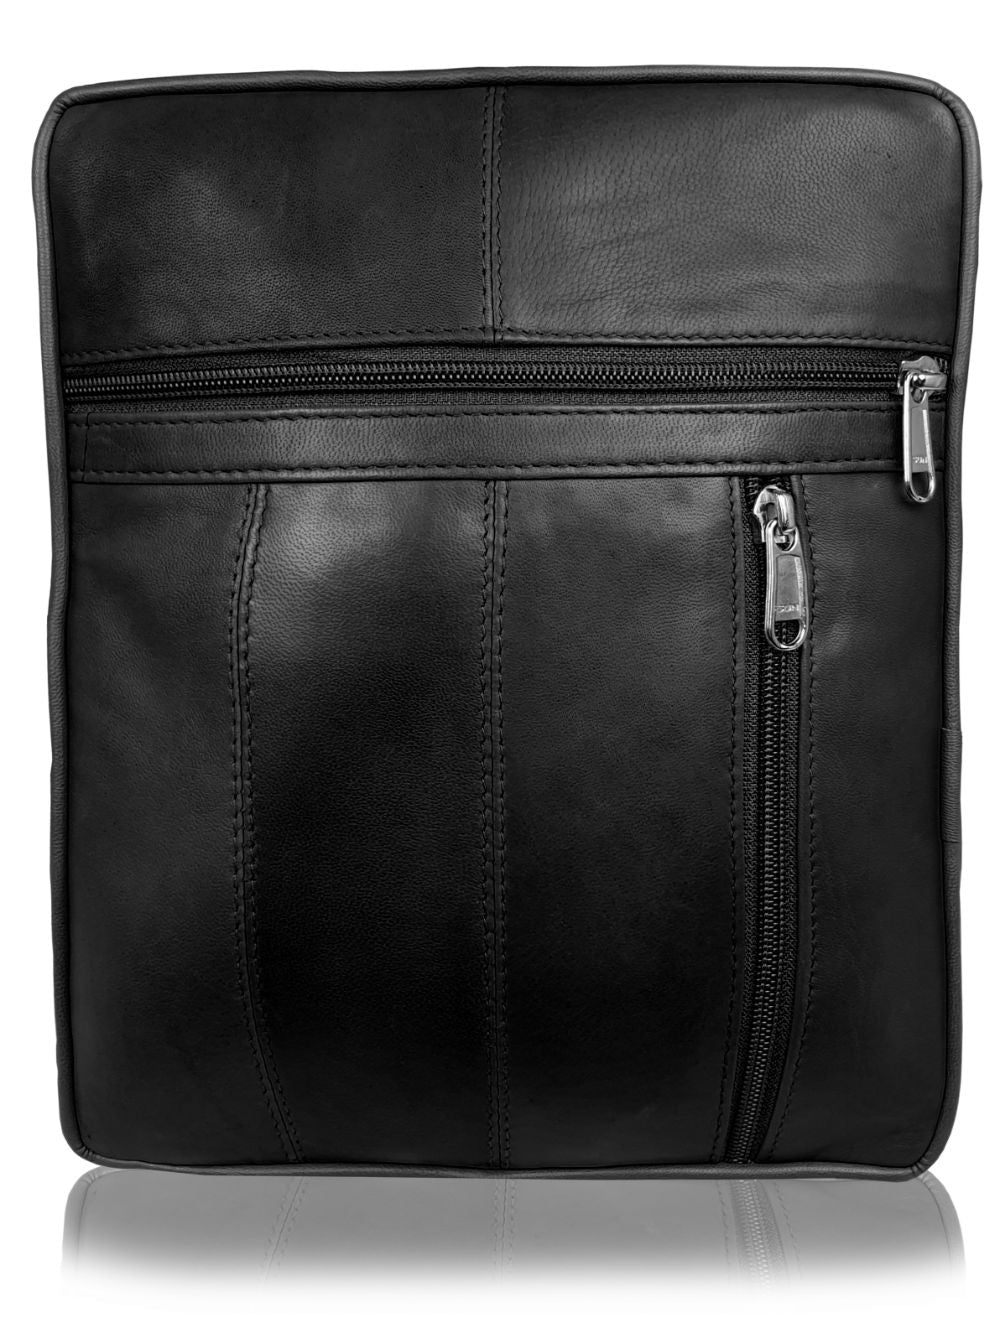 Roamlite Mens Travel Bag Black Leather RL504 back